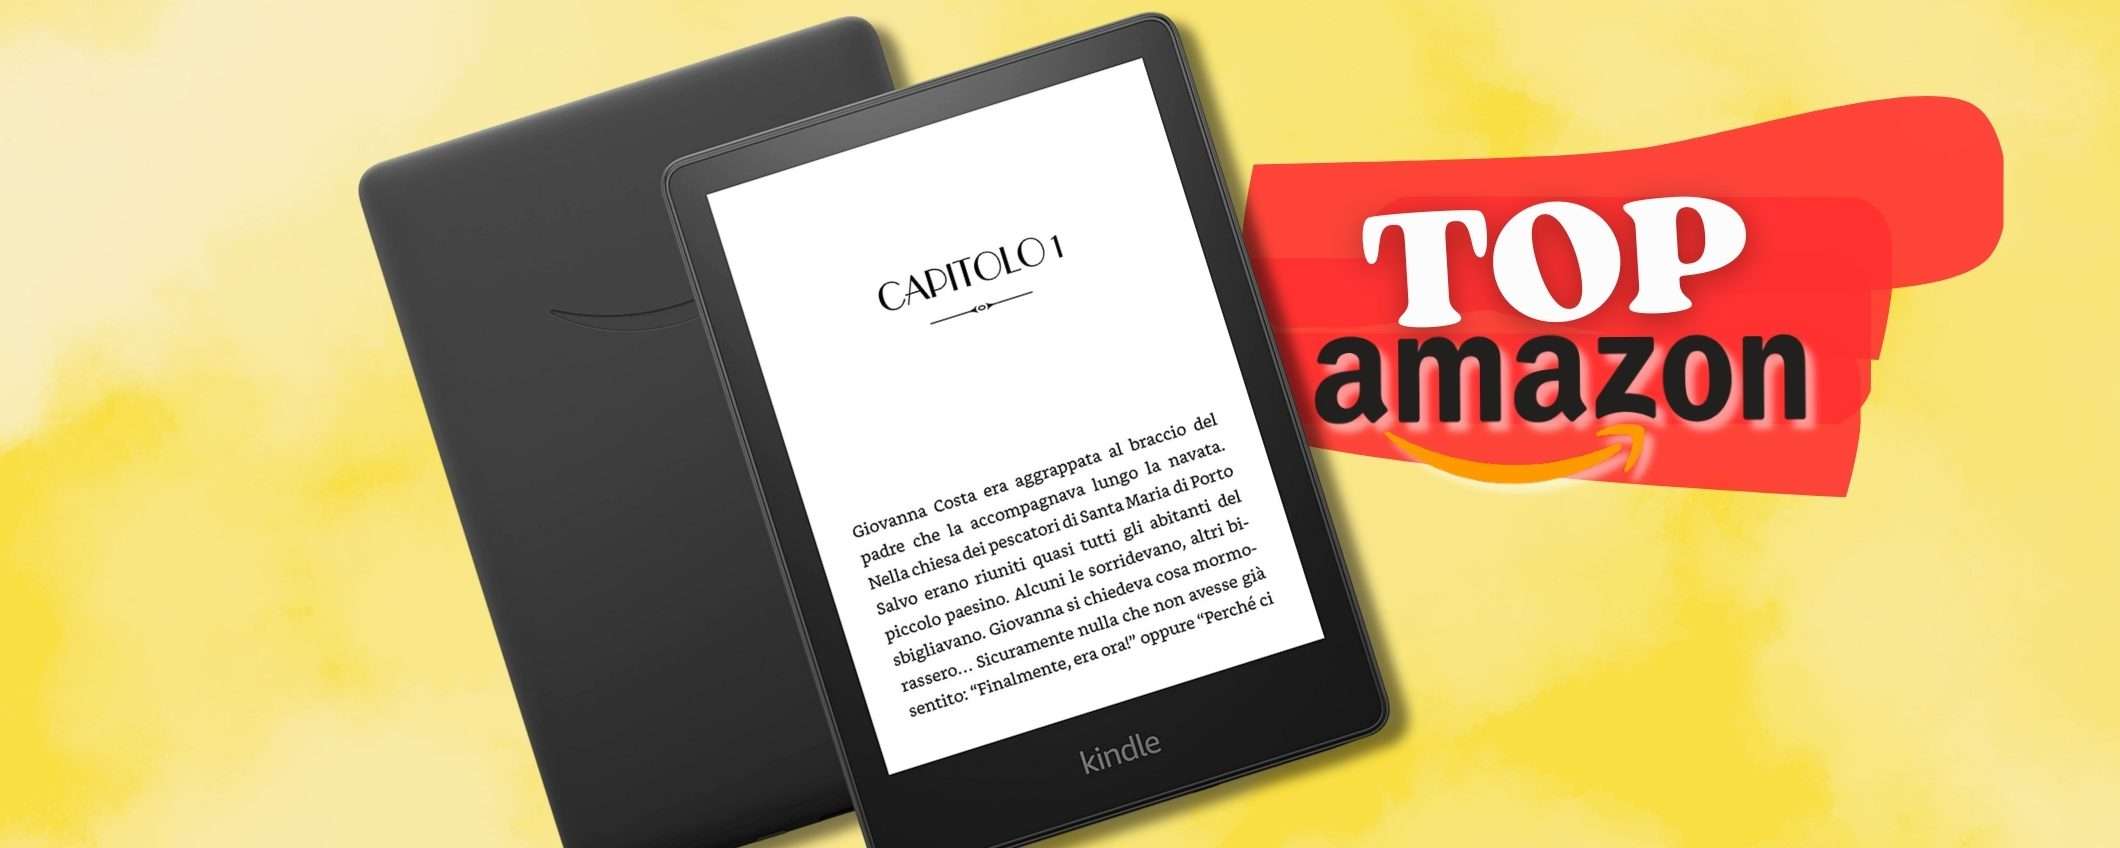 Kindle Paperwhite (16GB) per leggere OVUNQUE a peso piuma (sconto)